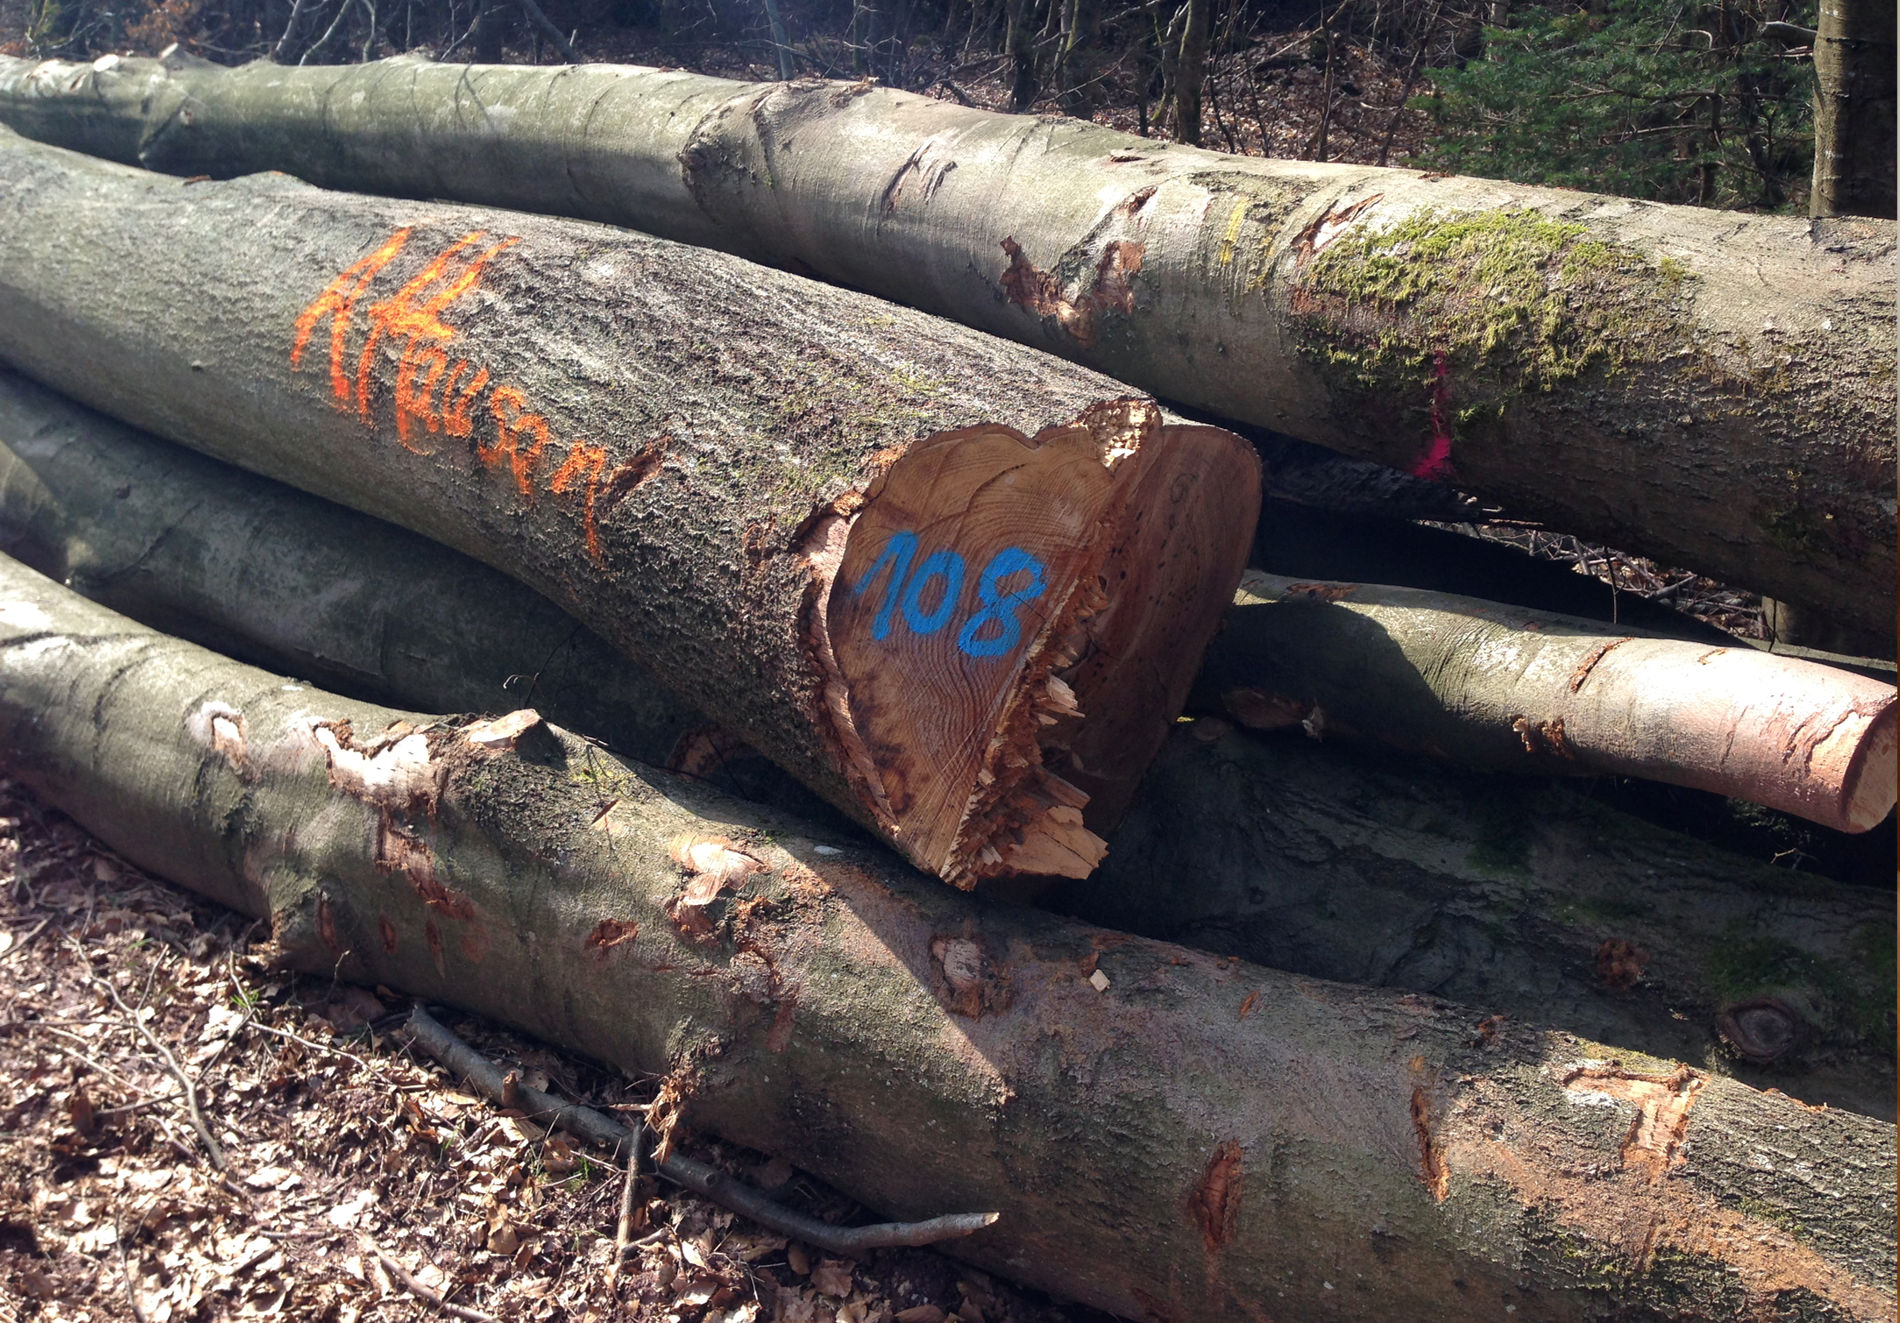 Gestapelte Baumstämme im Wald mit farbigen Markierungen; einer davon hat die Zahl "108" in Blau und ein anderer den Schriftzug "R Hansen" in Orange gesprüht.